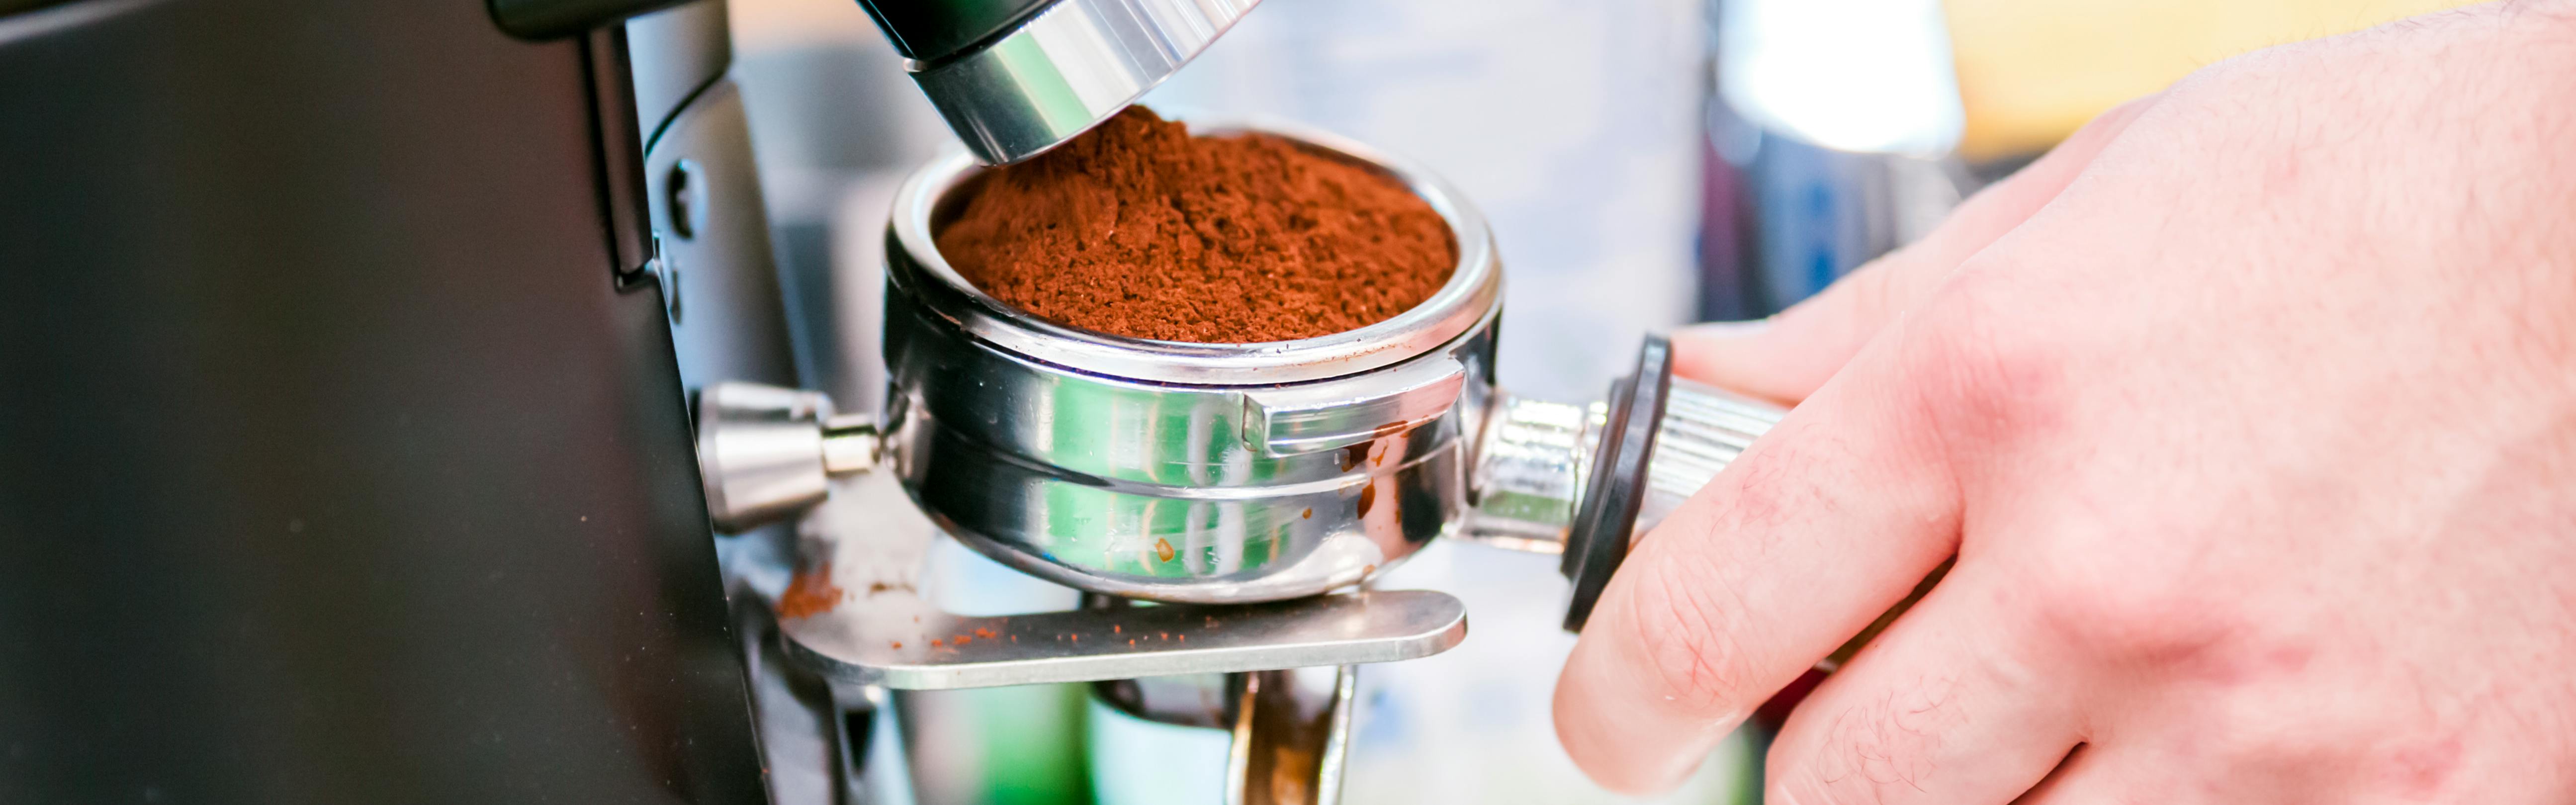 Expert Recipe: How to Make a Shaken Espresso